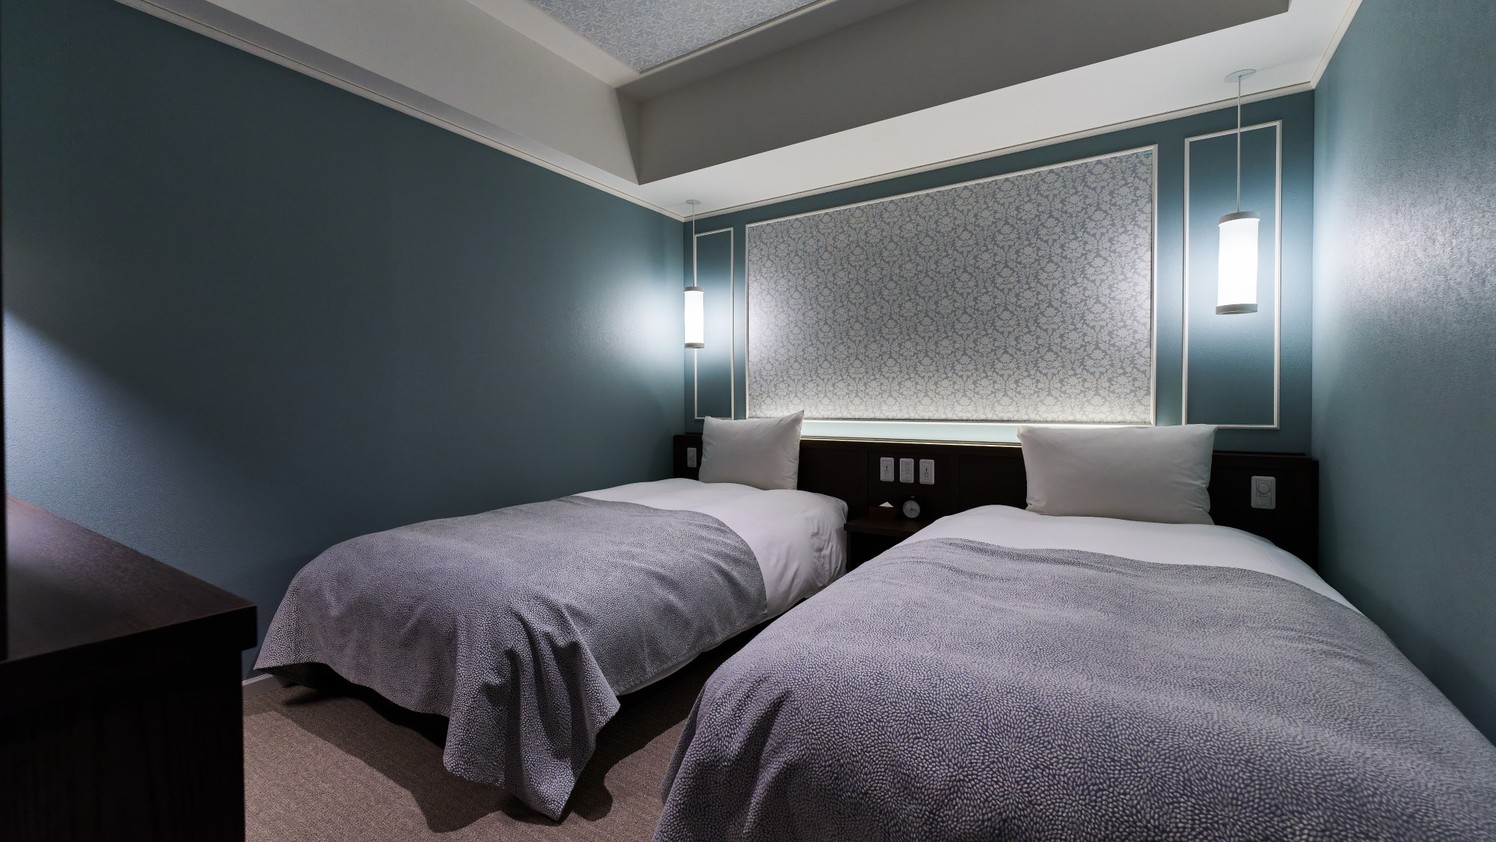 【フォース】寝室は灯りを押さえたロマンチックな設え。より良い朝の為にゆっくりと休める時間に。